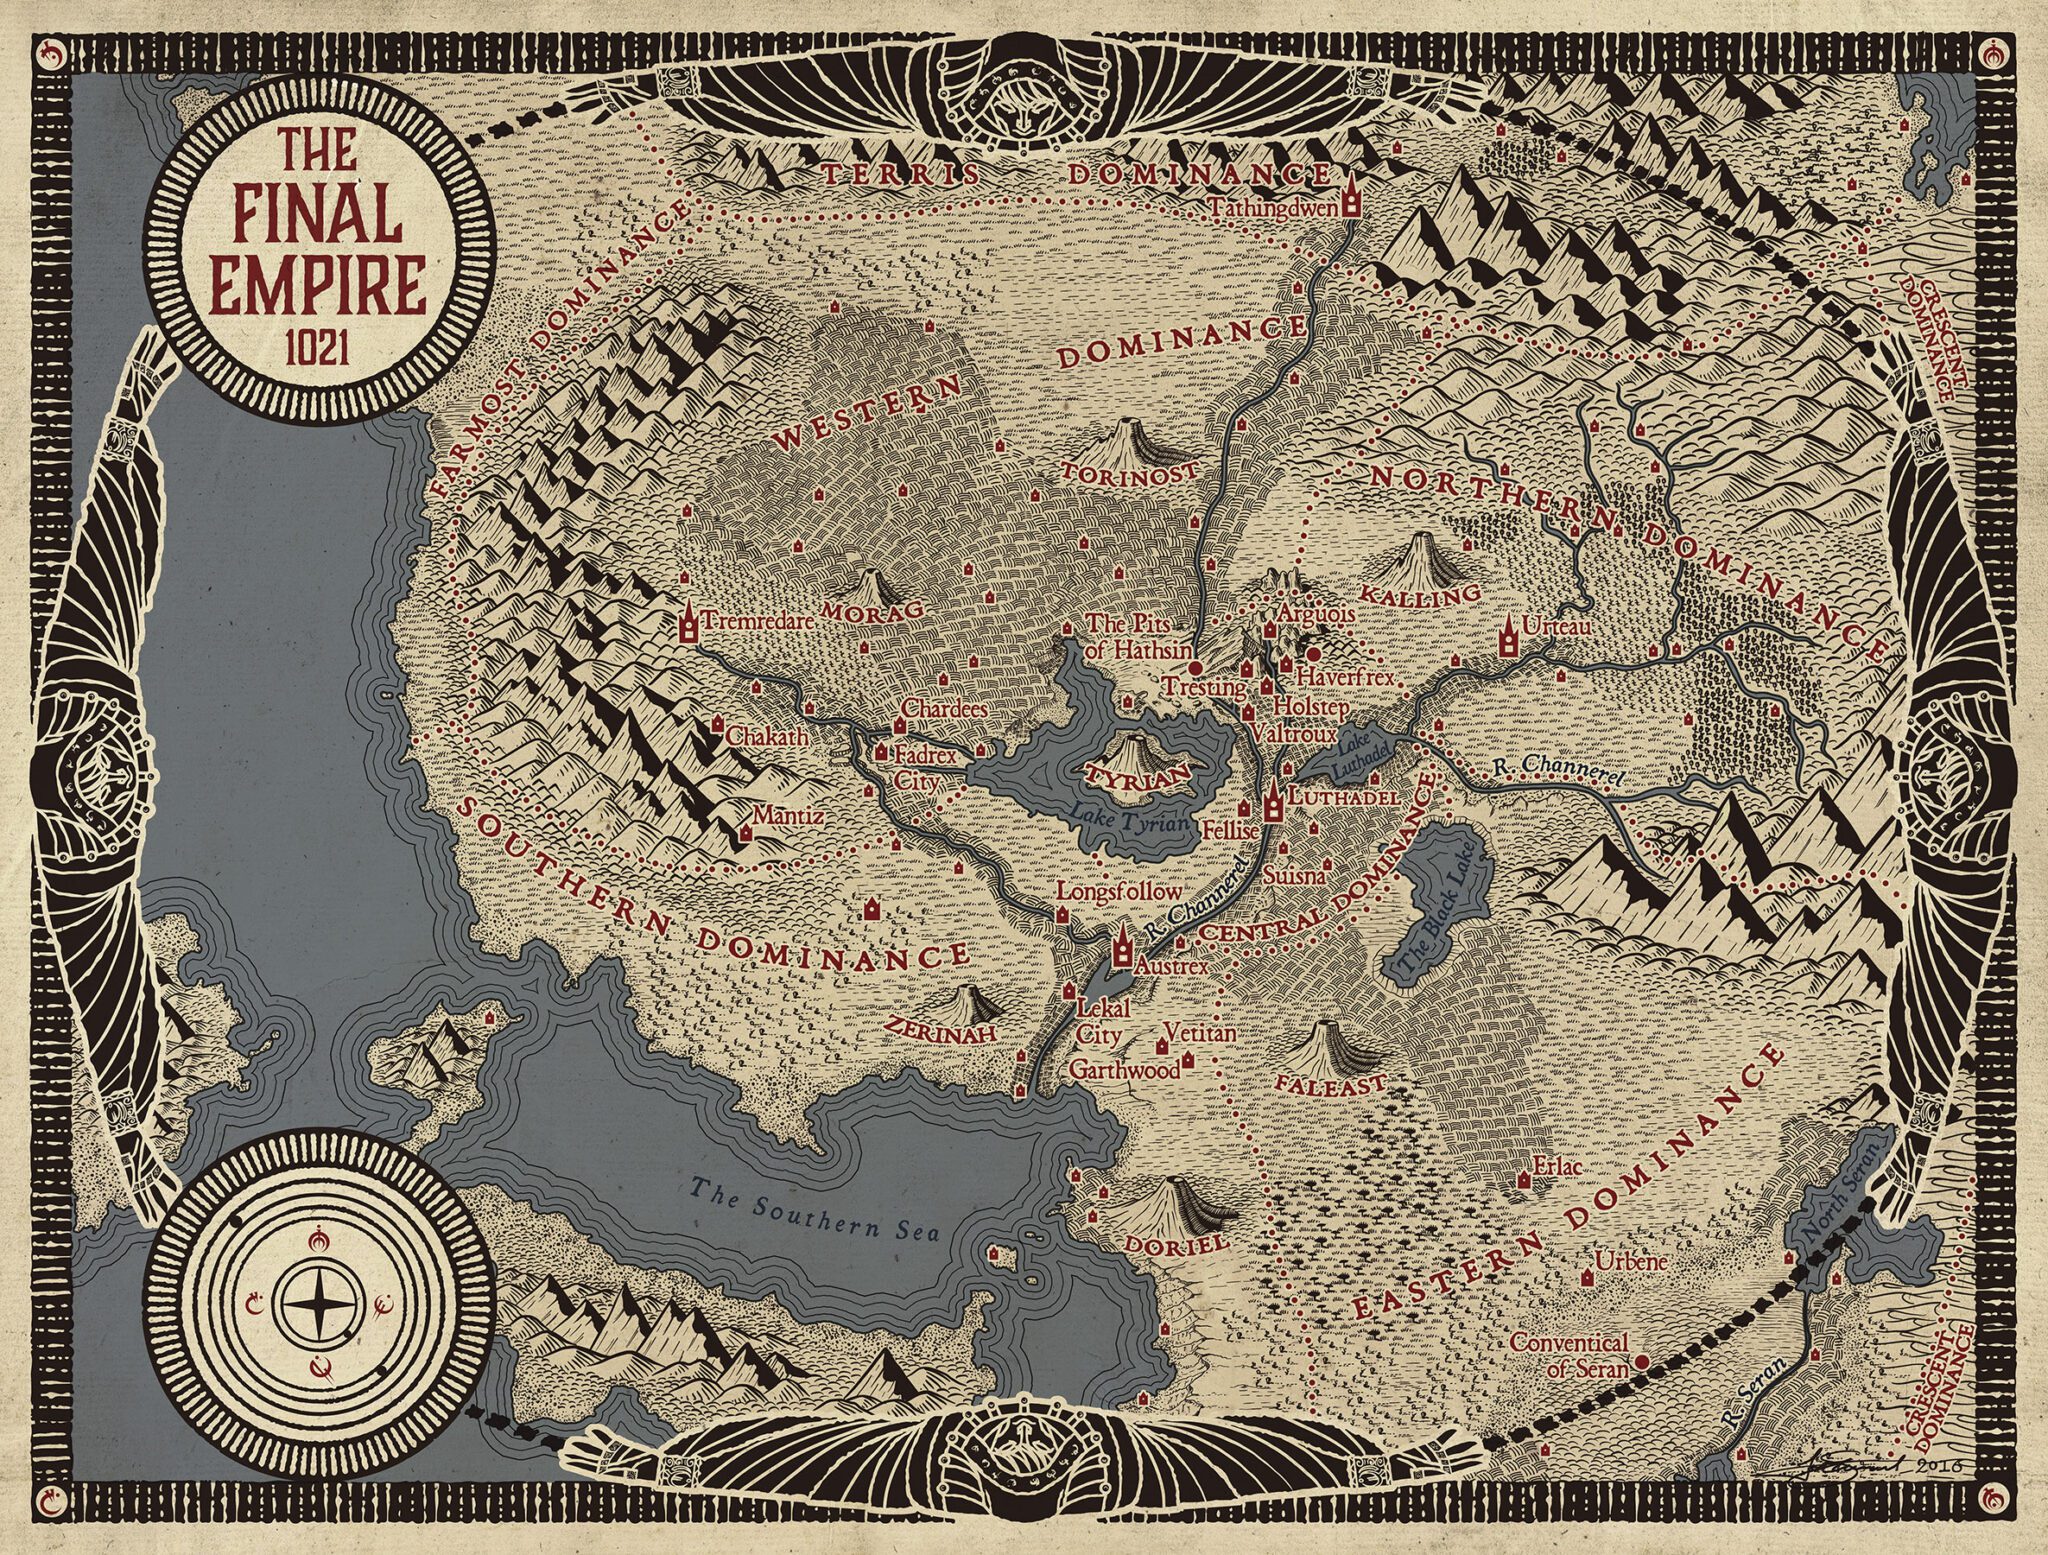 Mistborn: The Final Empire - Wikipedia